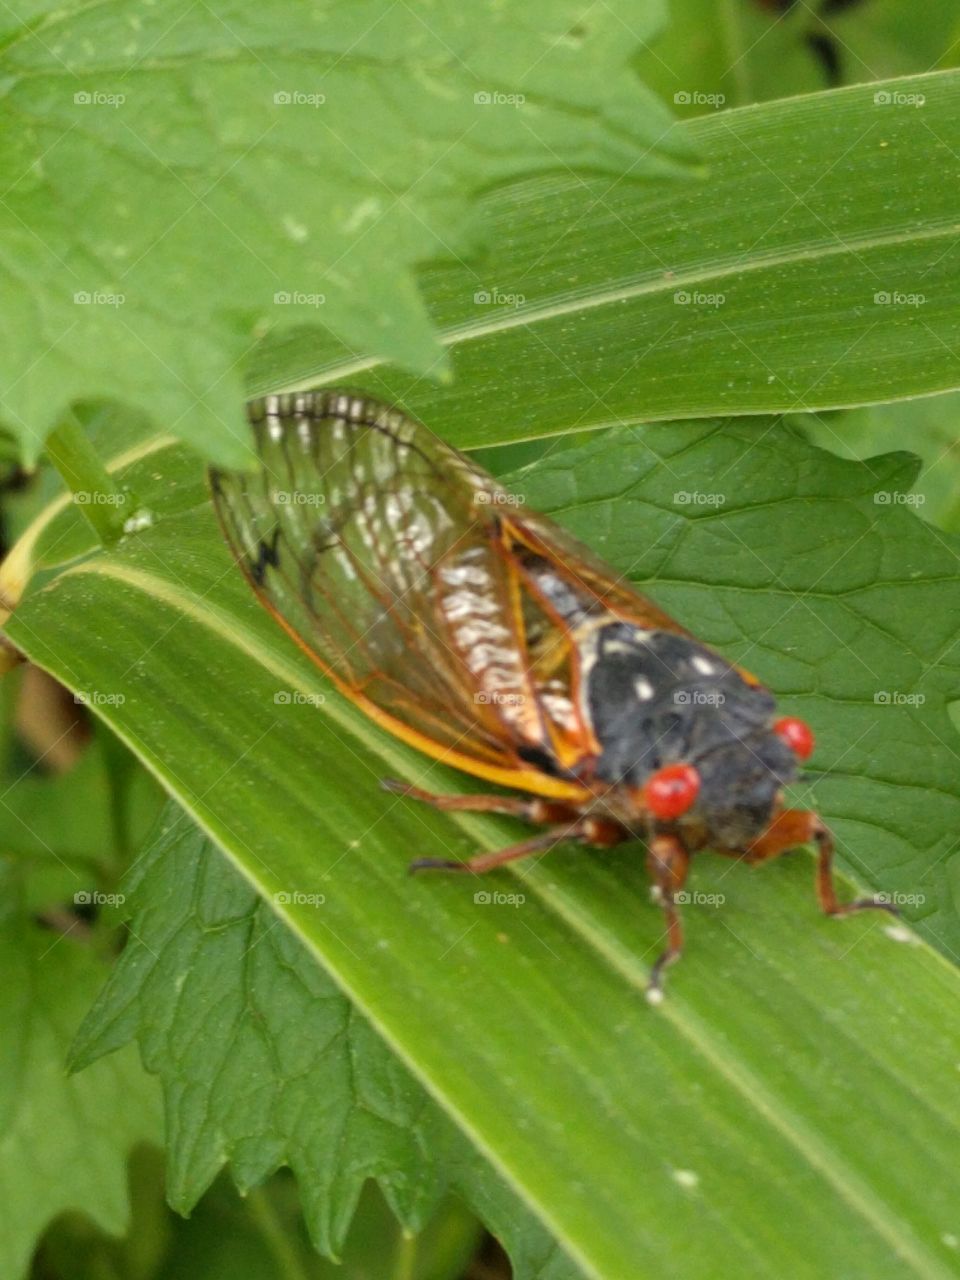 Maryland 2017 cicada